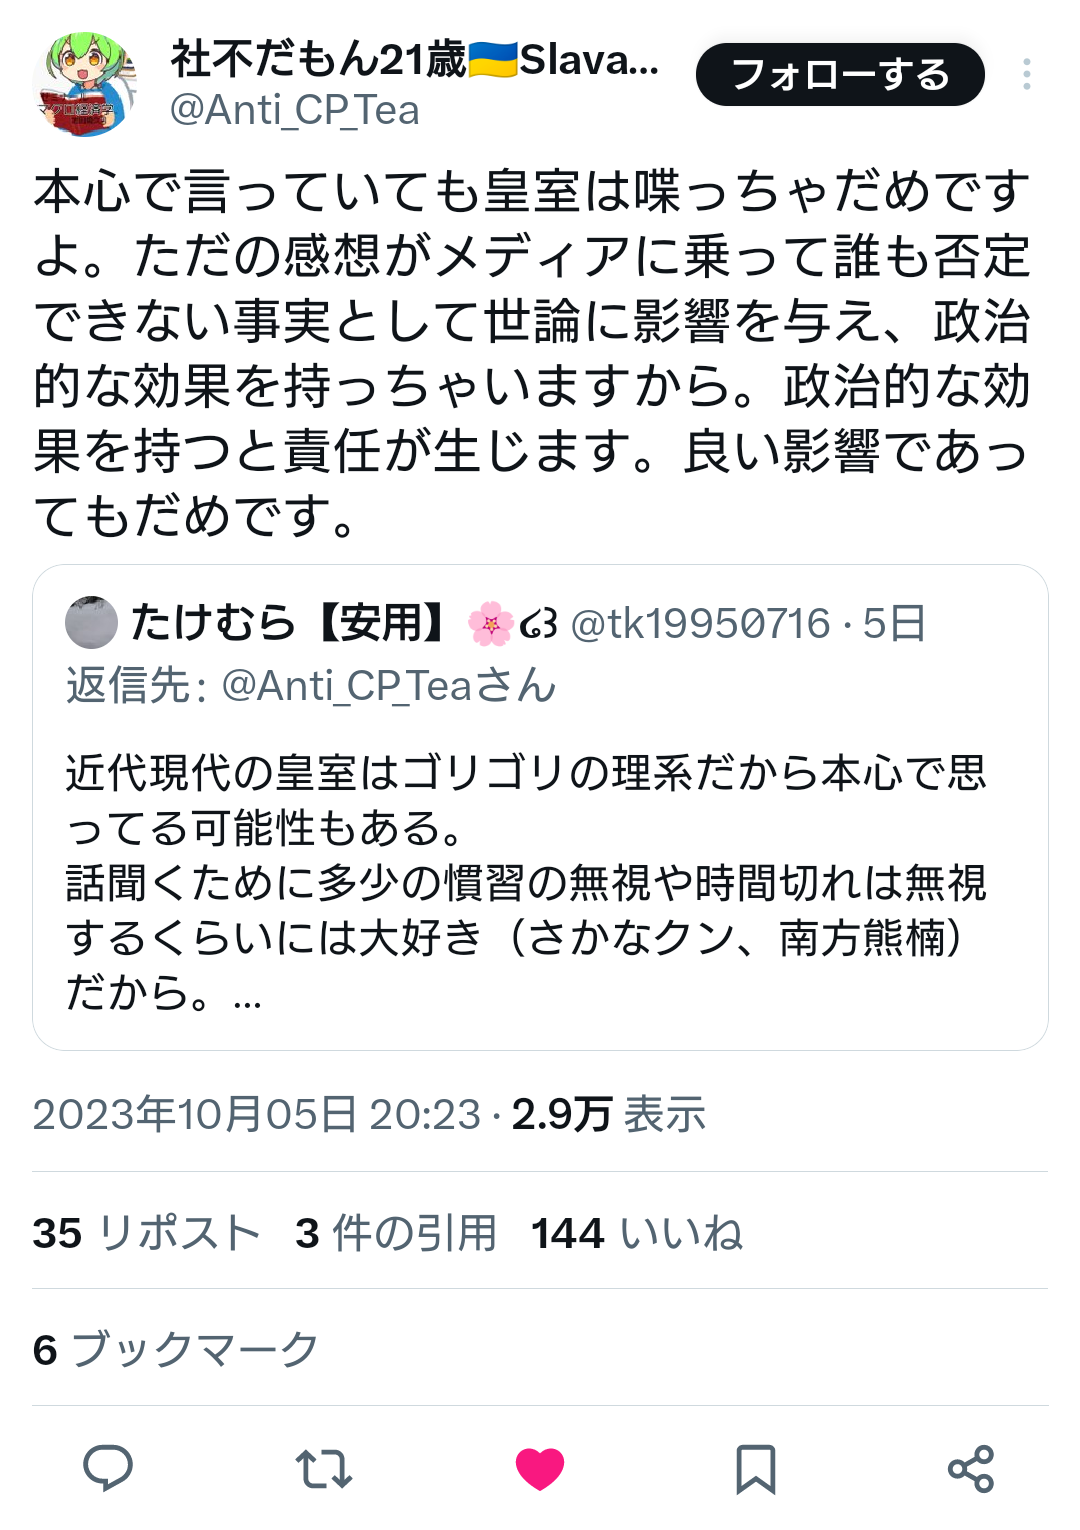 【悲報】佳子さまの「👩女性は理系に進みにくい」発言、Twitterで騒ぎに。😲  [633049833]\n_1